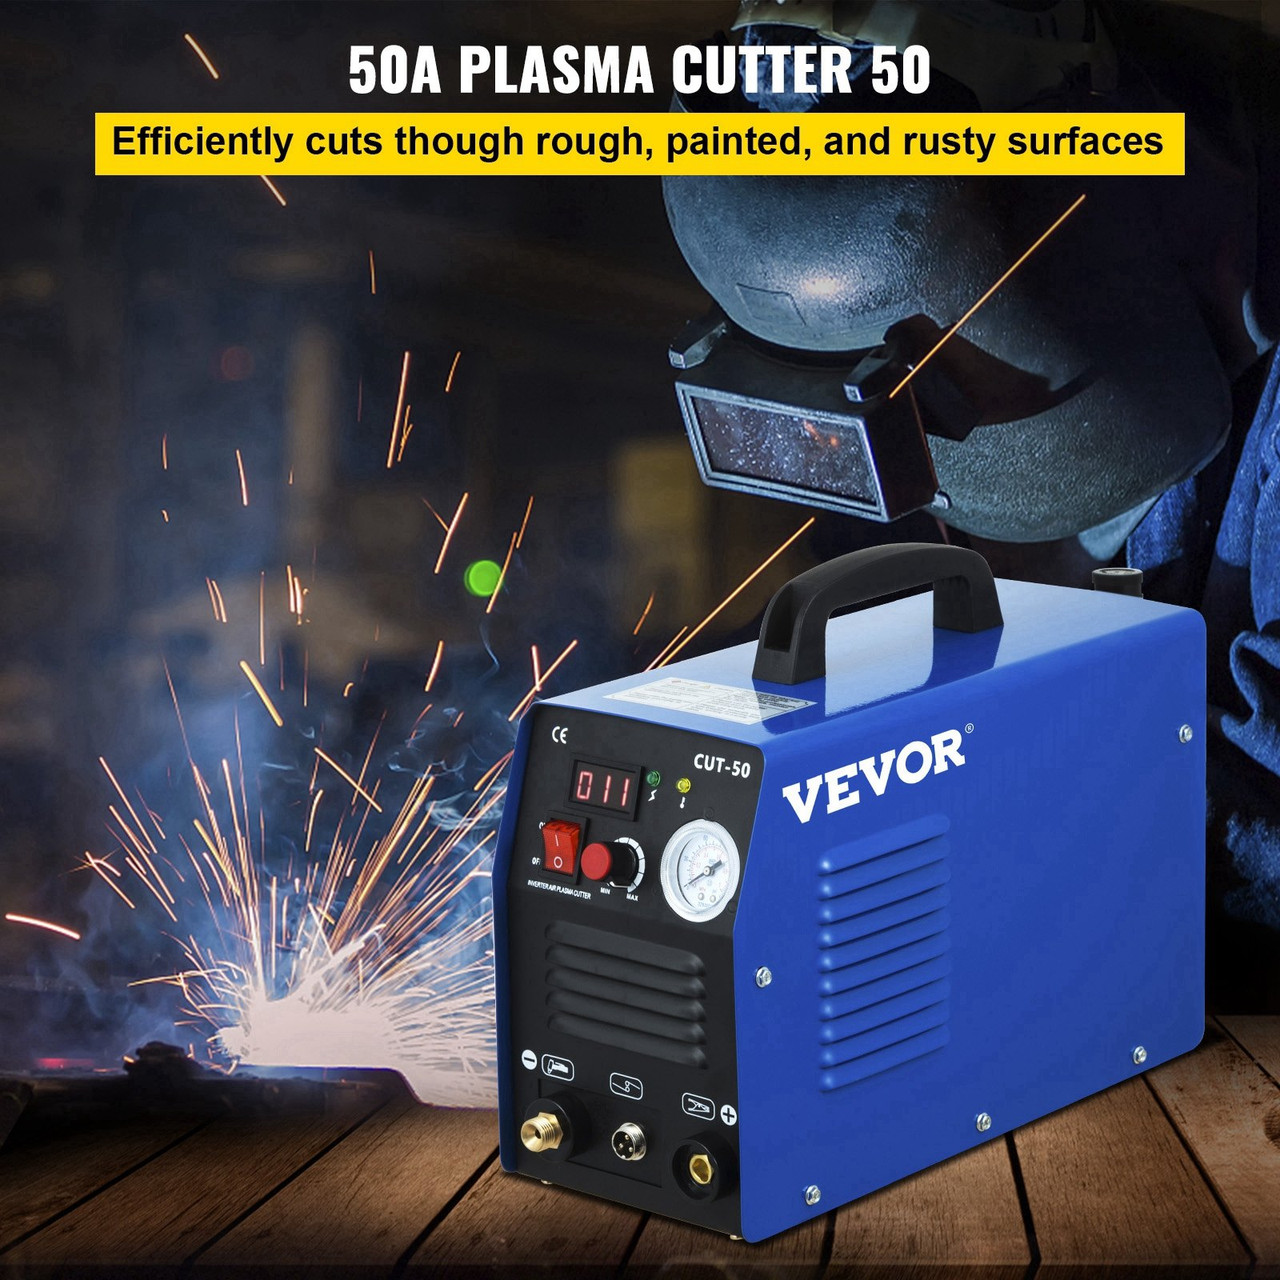 Plasma Cutter, CUT-50 Air Inverter Plasma Cutter, 50A Plasma Cutting Machine, Max Cutting Thickness 0.47" Air Plasma Cutter, Digital Display Cutter